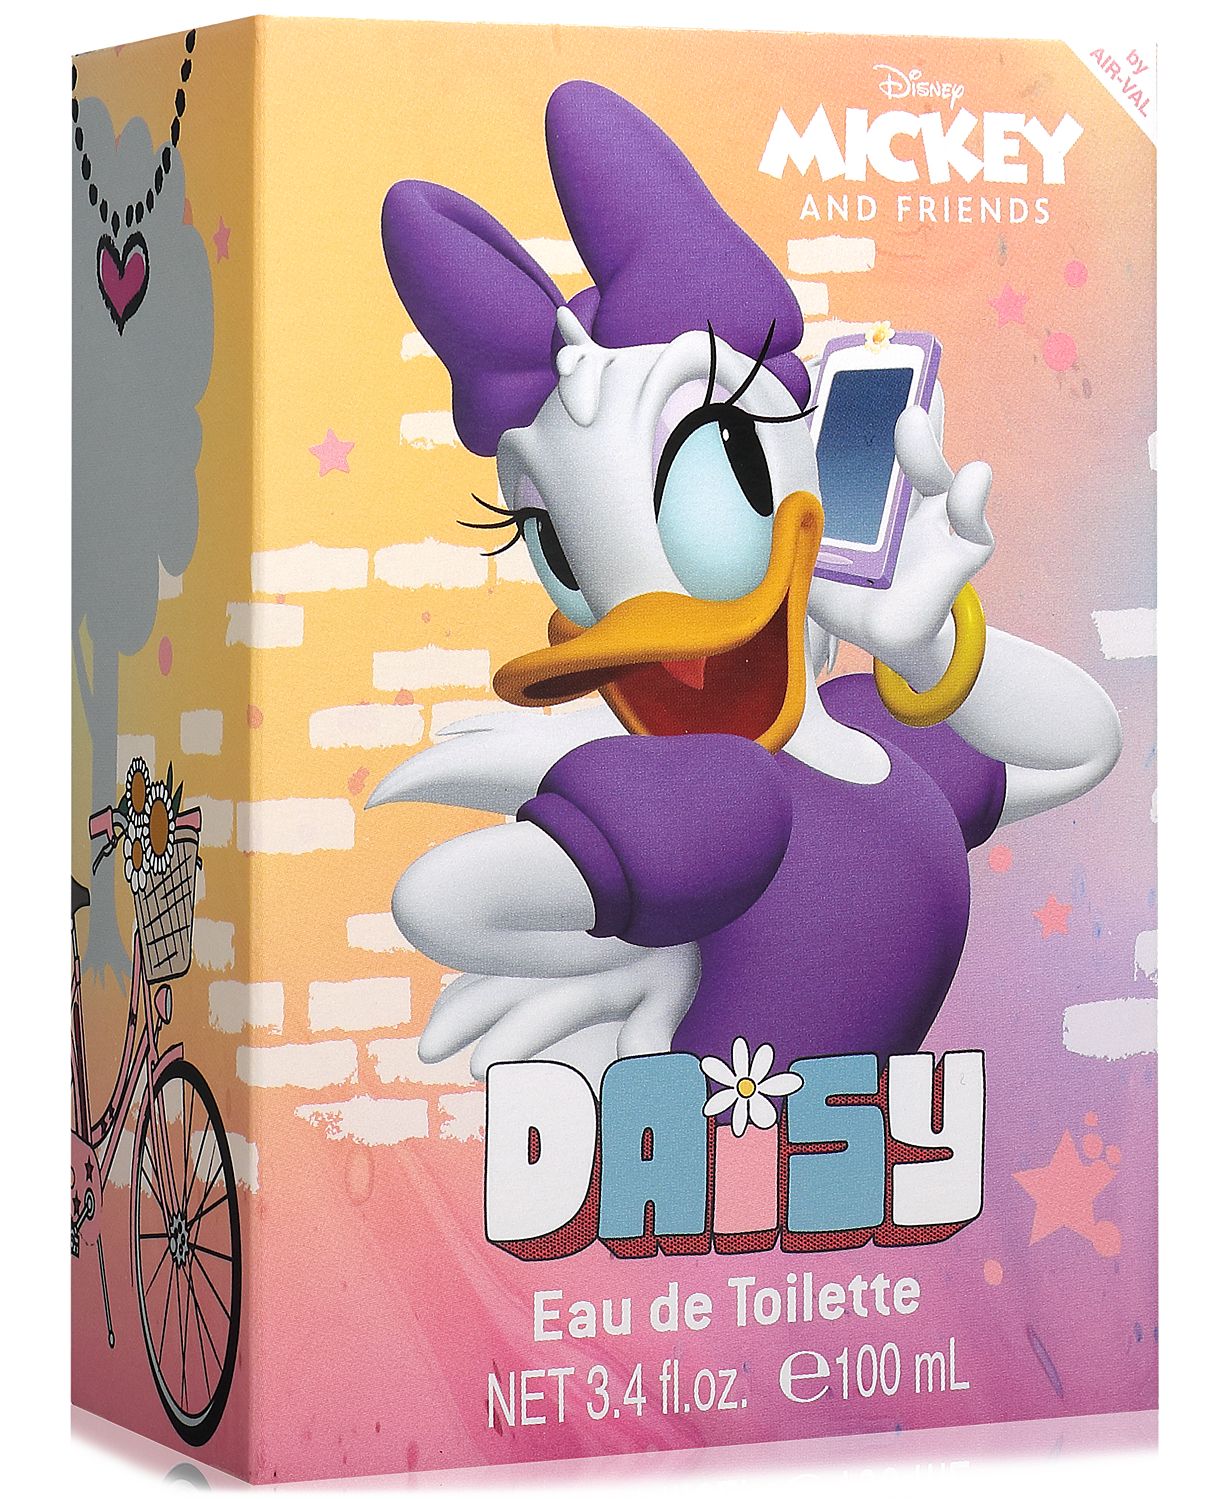 Daisy Duck Eau de Toilette, 3.4 oz.